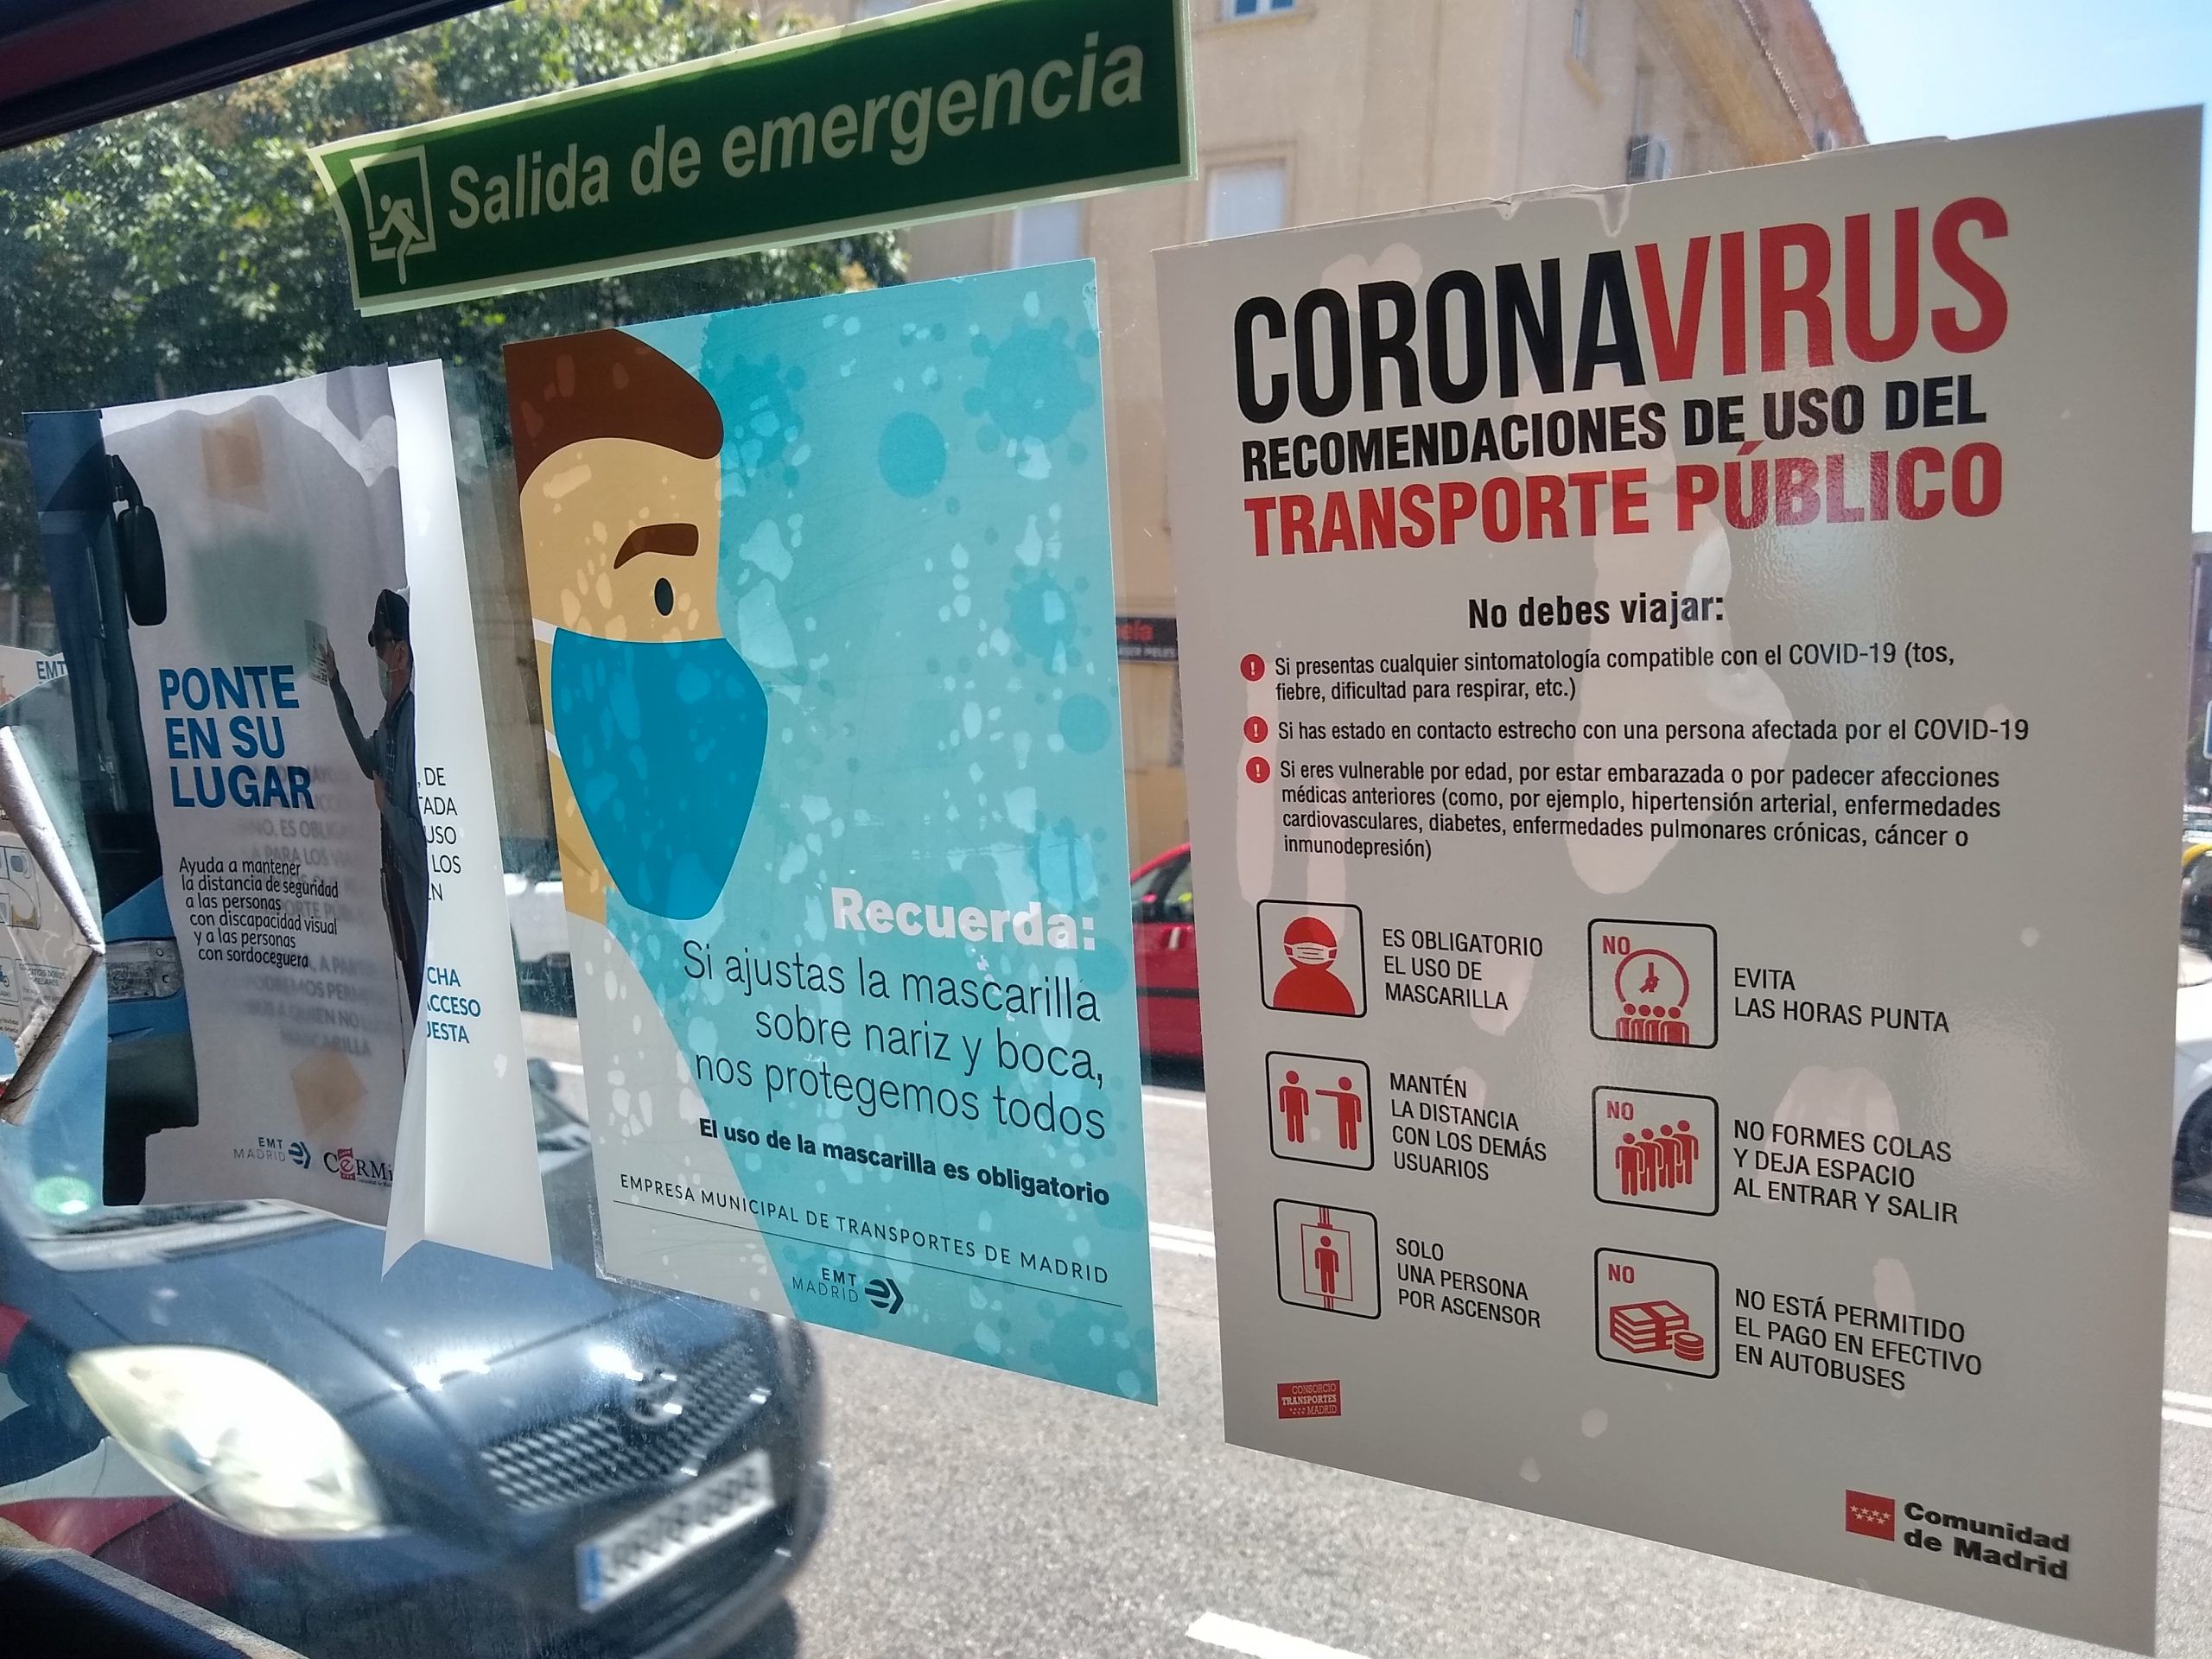 La ciudad ha registrado 10 nuevos casos en los últimos 14 días. Alcorcón supera los 2.000 casos de coronavirus mientras se trabaja contra los rebrotes.